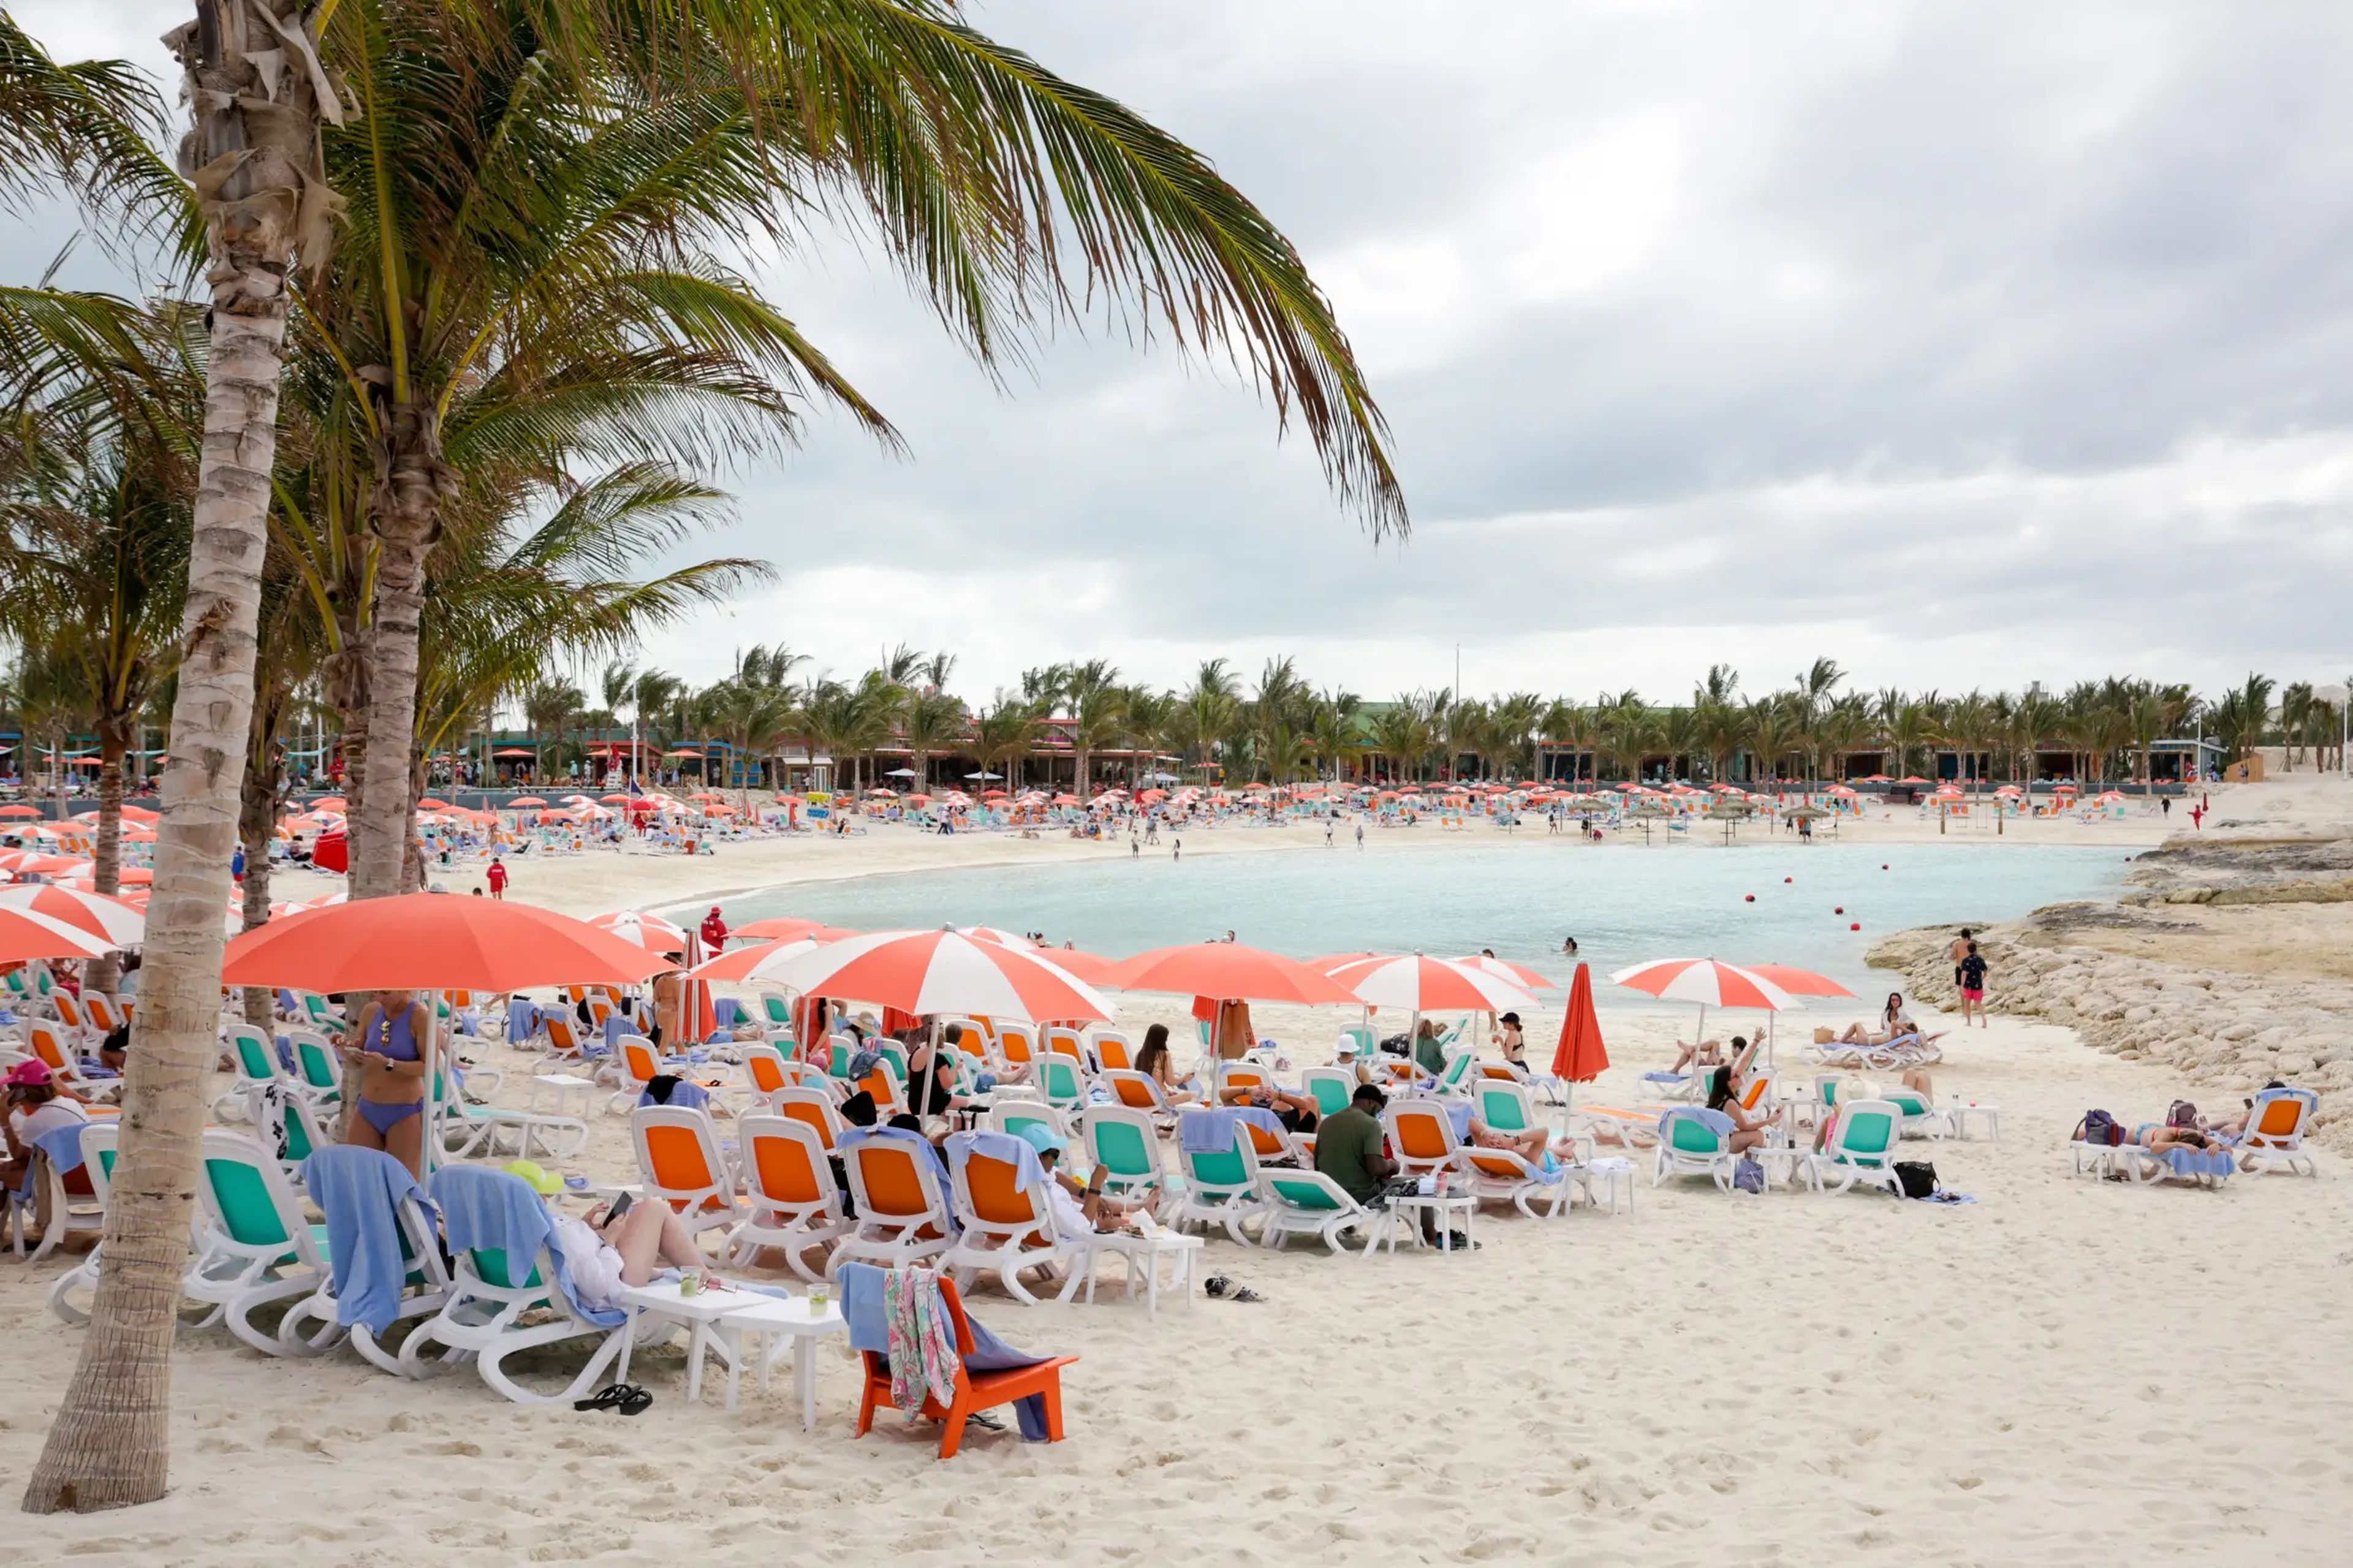 Royal Caribbean inauguró en enero Hideaway Beach, la nueva sección exclusiva para adultos de su isla privada Perfect Day at CocoCay.